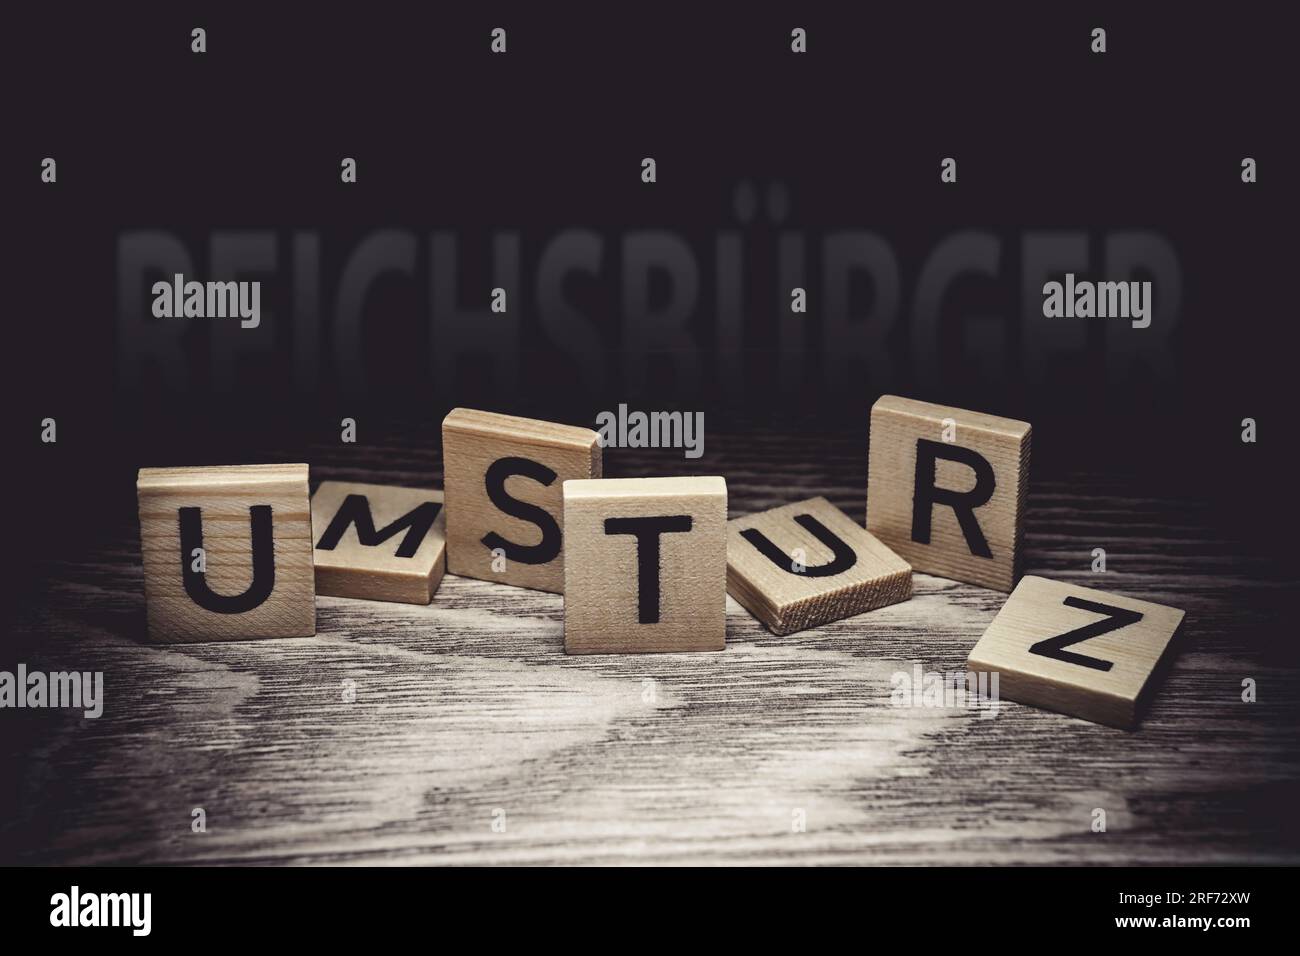 FOTOMONTAGE, Buchstaben bilden den Schriftzug Umsturz, im Hintergrund das Wort Reichsbürger Foto Stock